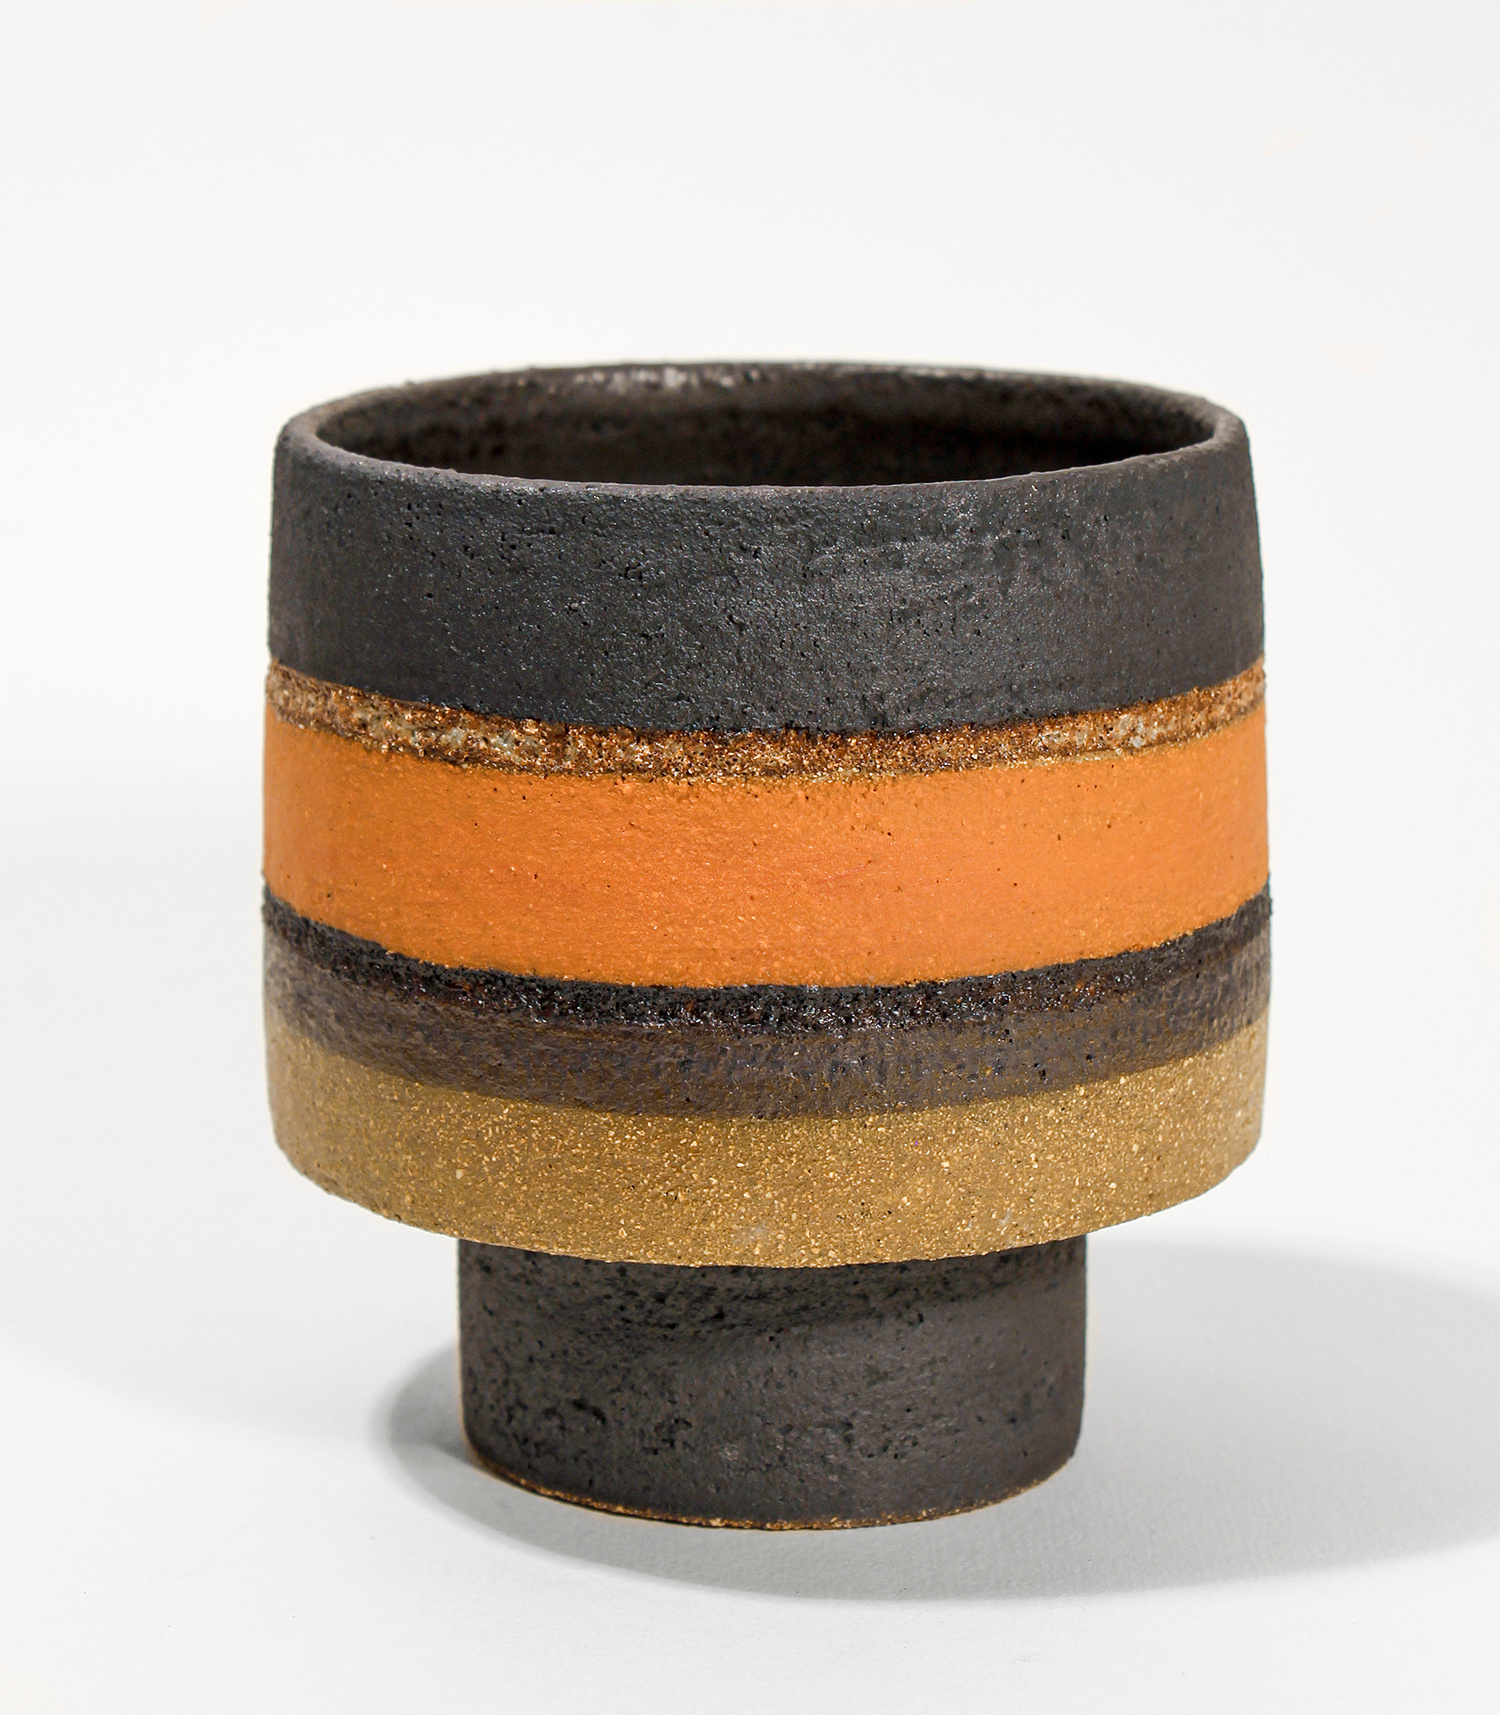 Black & Orange Footed Bowl by Rosalie Dodds